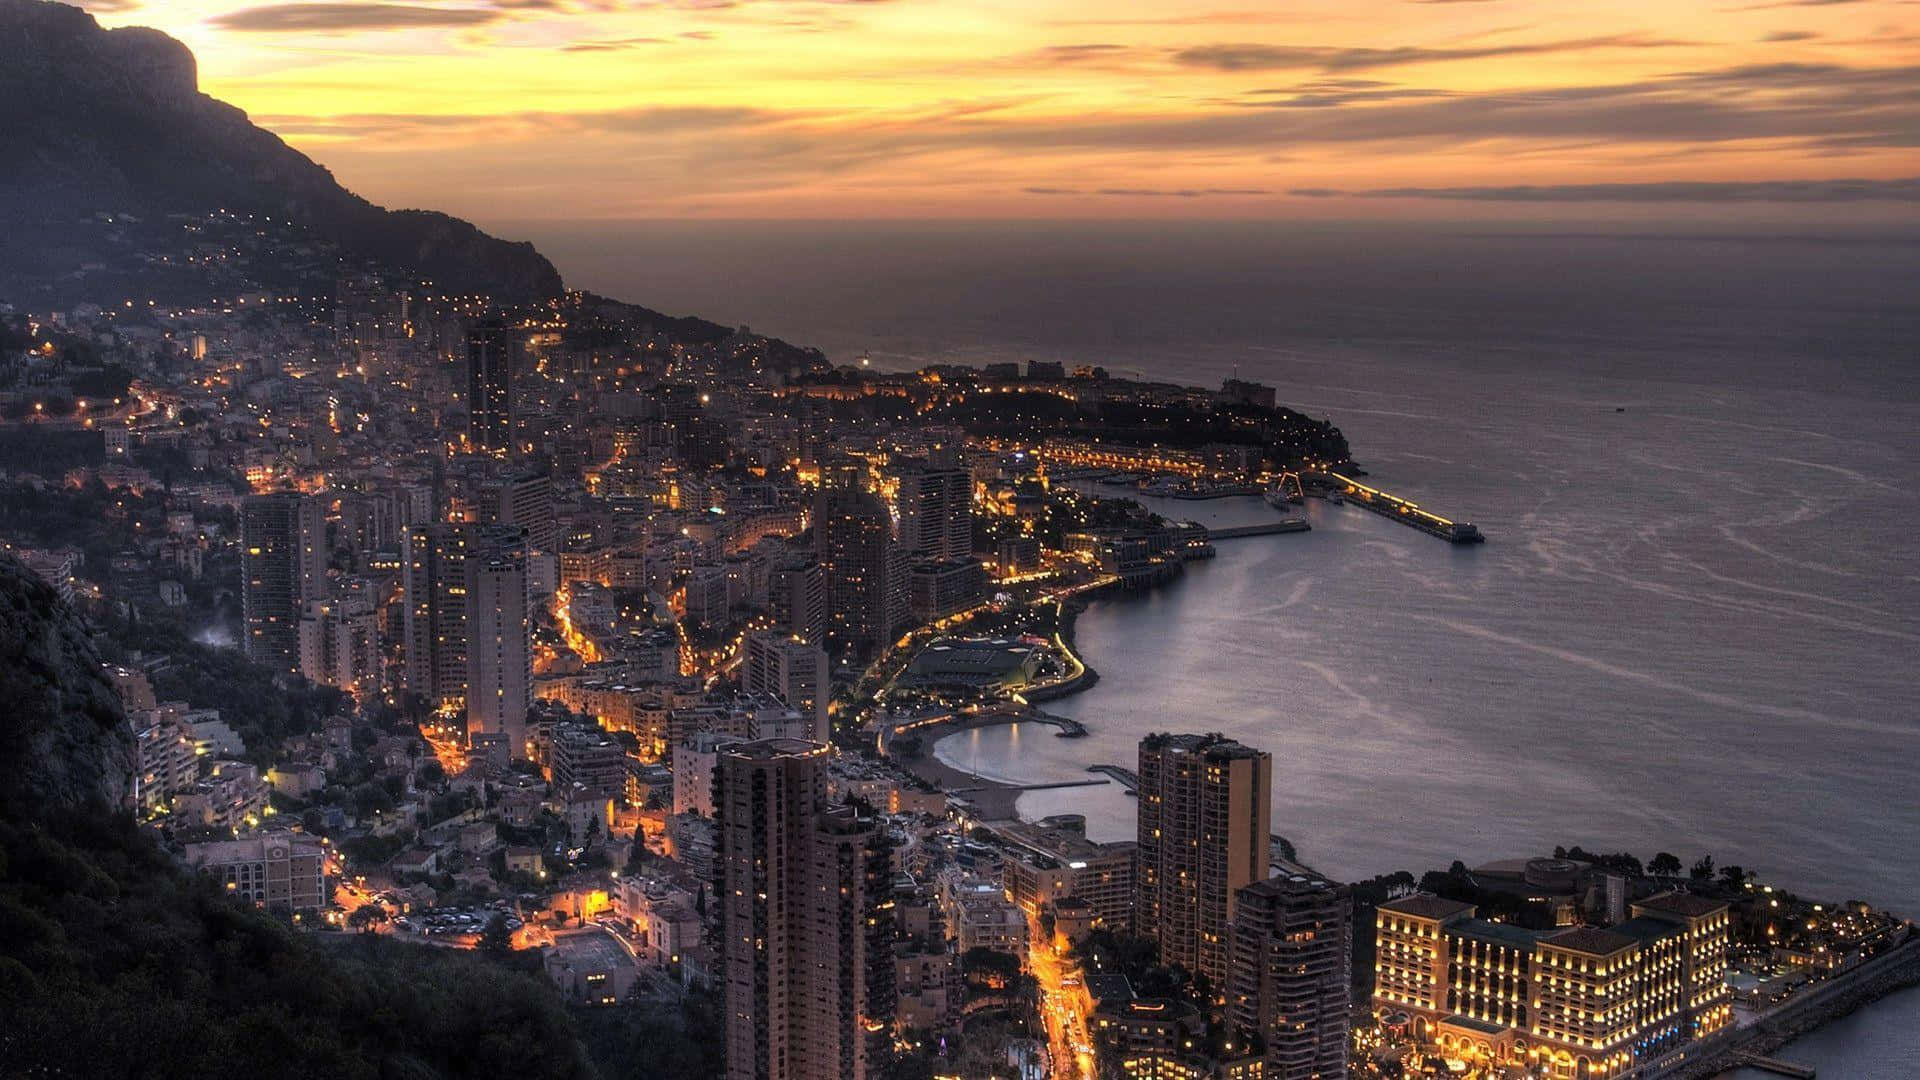 Bilddes Sonnenuntergangs In Monaco